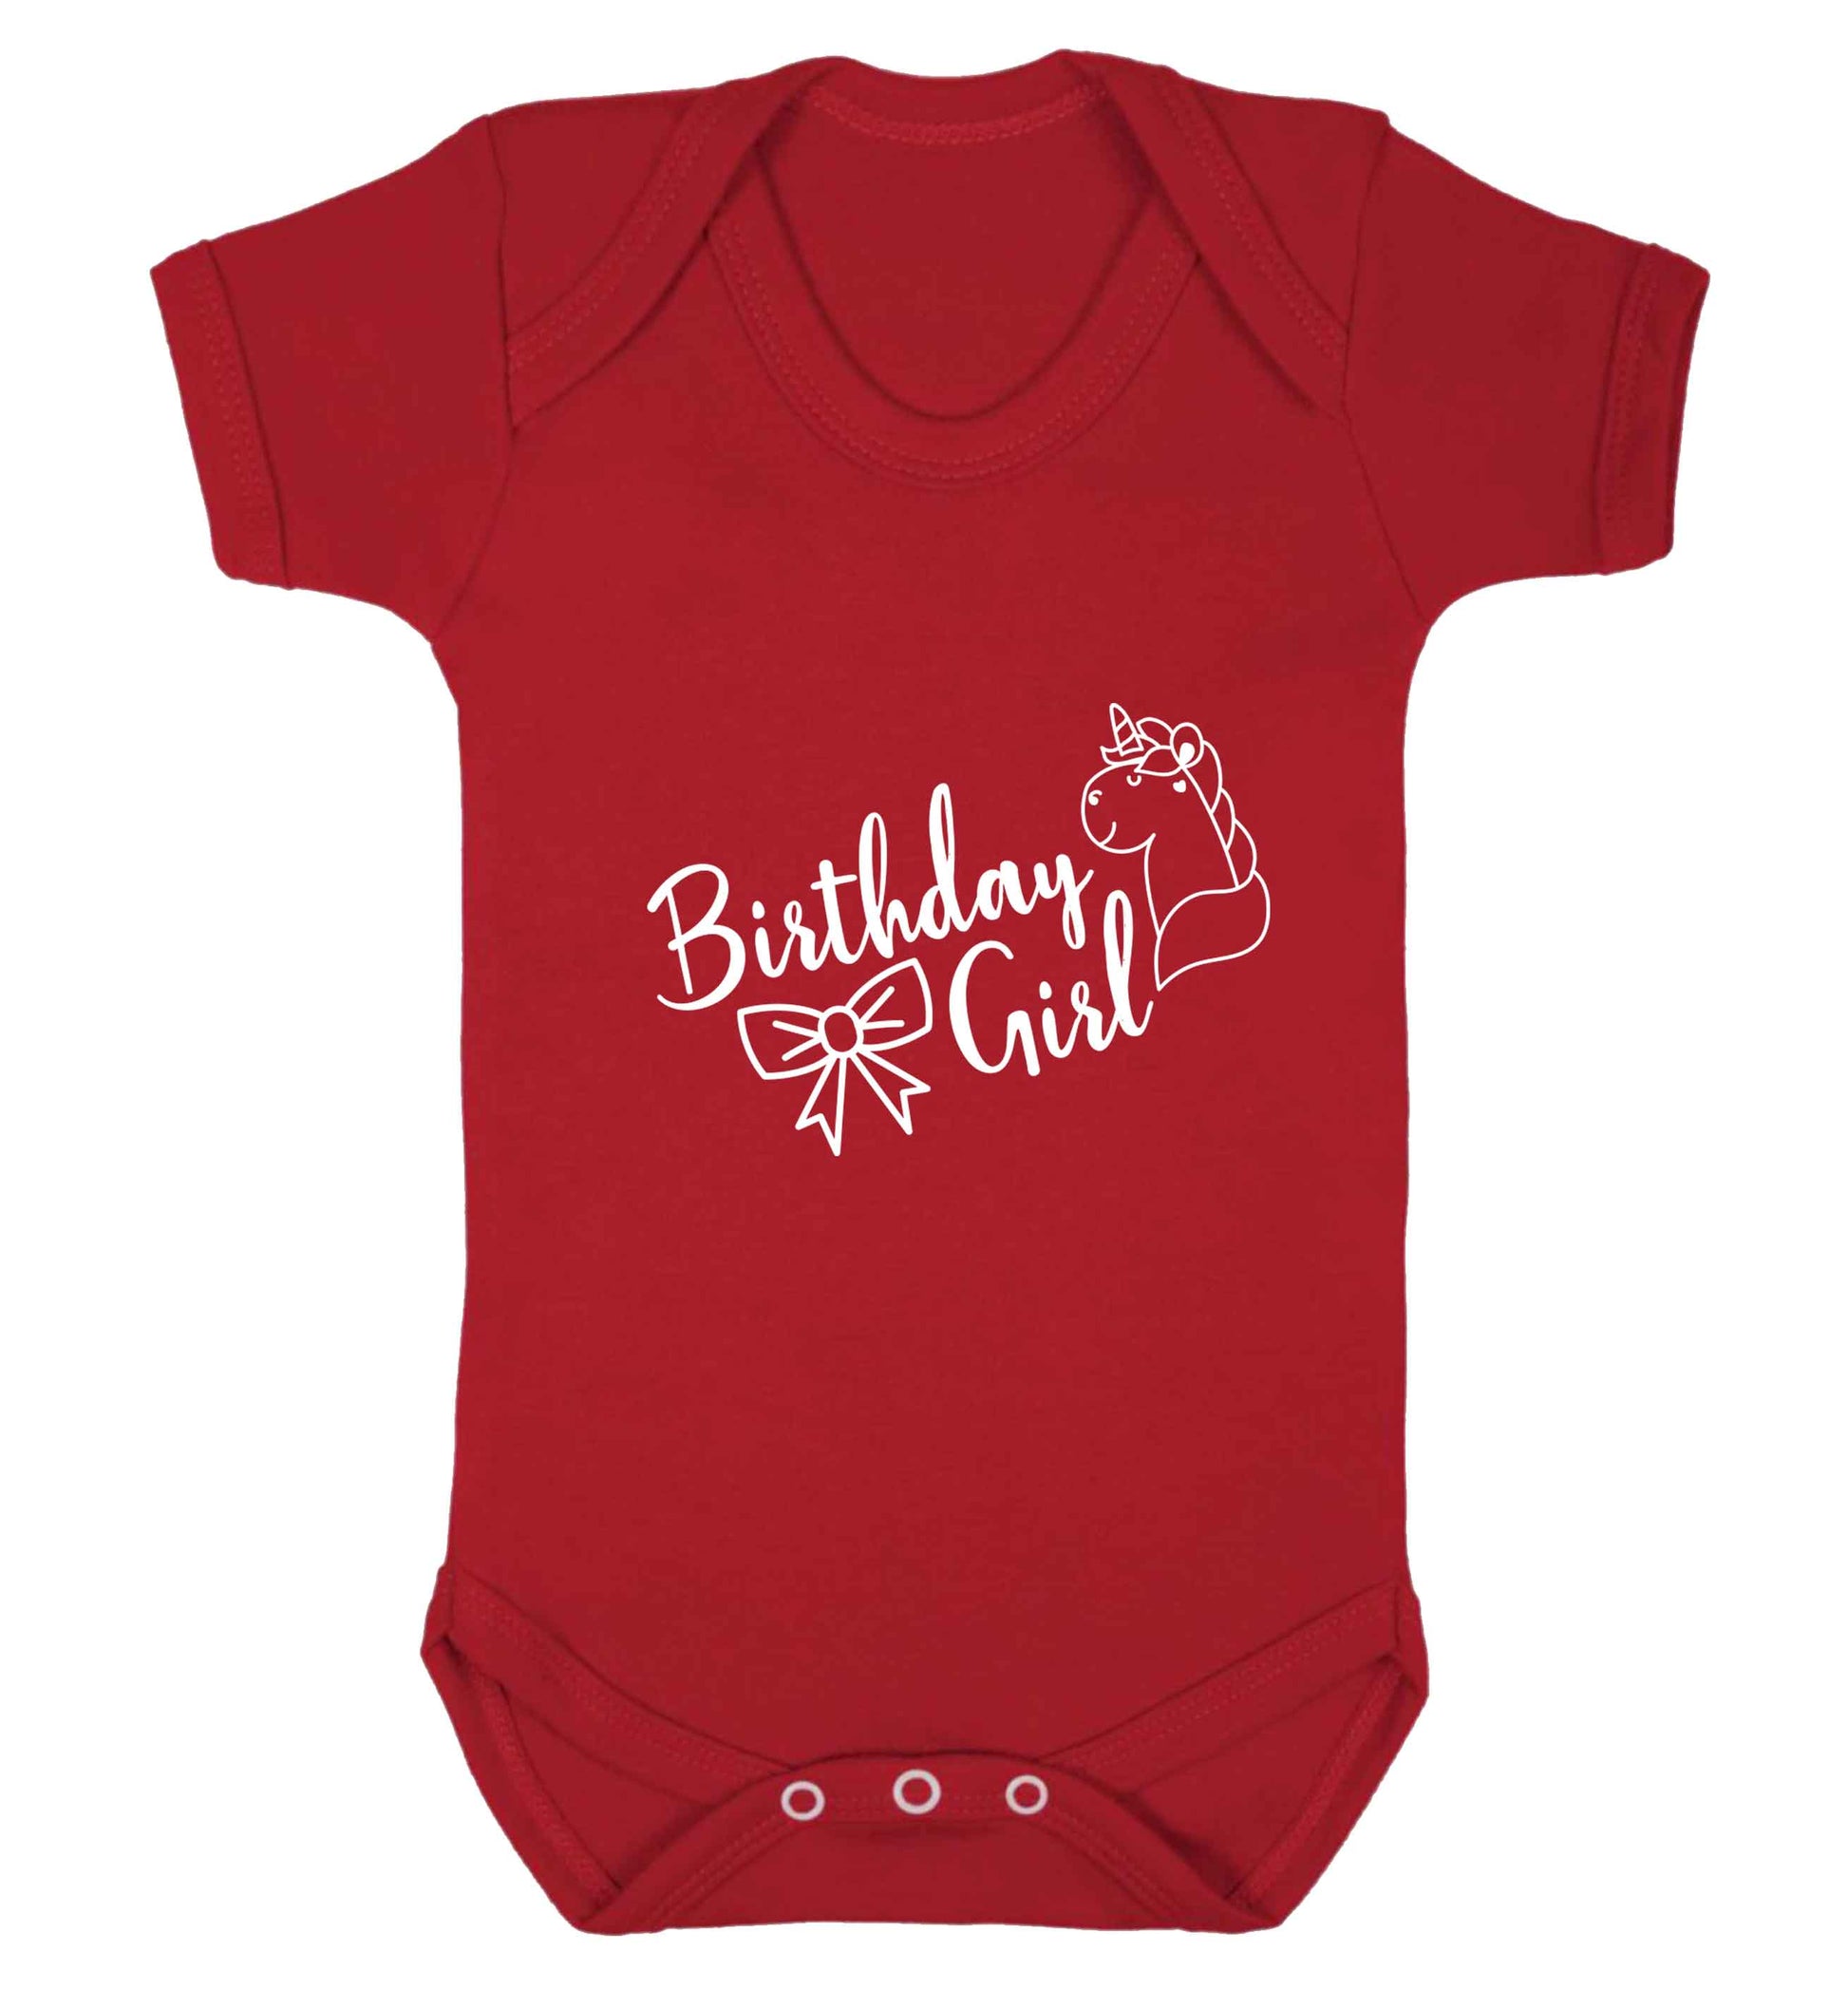 Birthday girl baby vest red 18-24 months